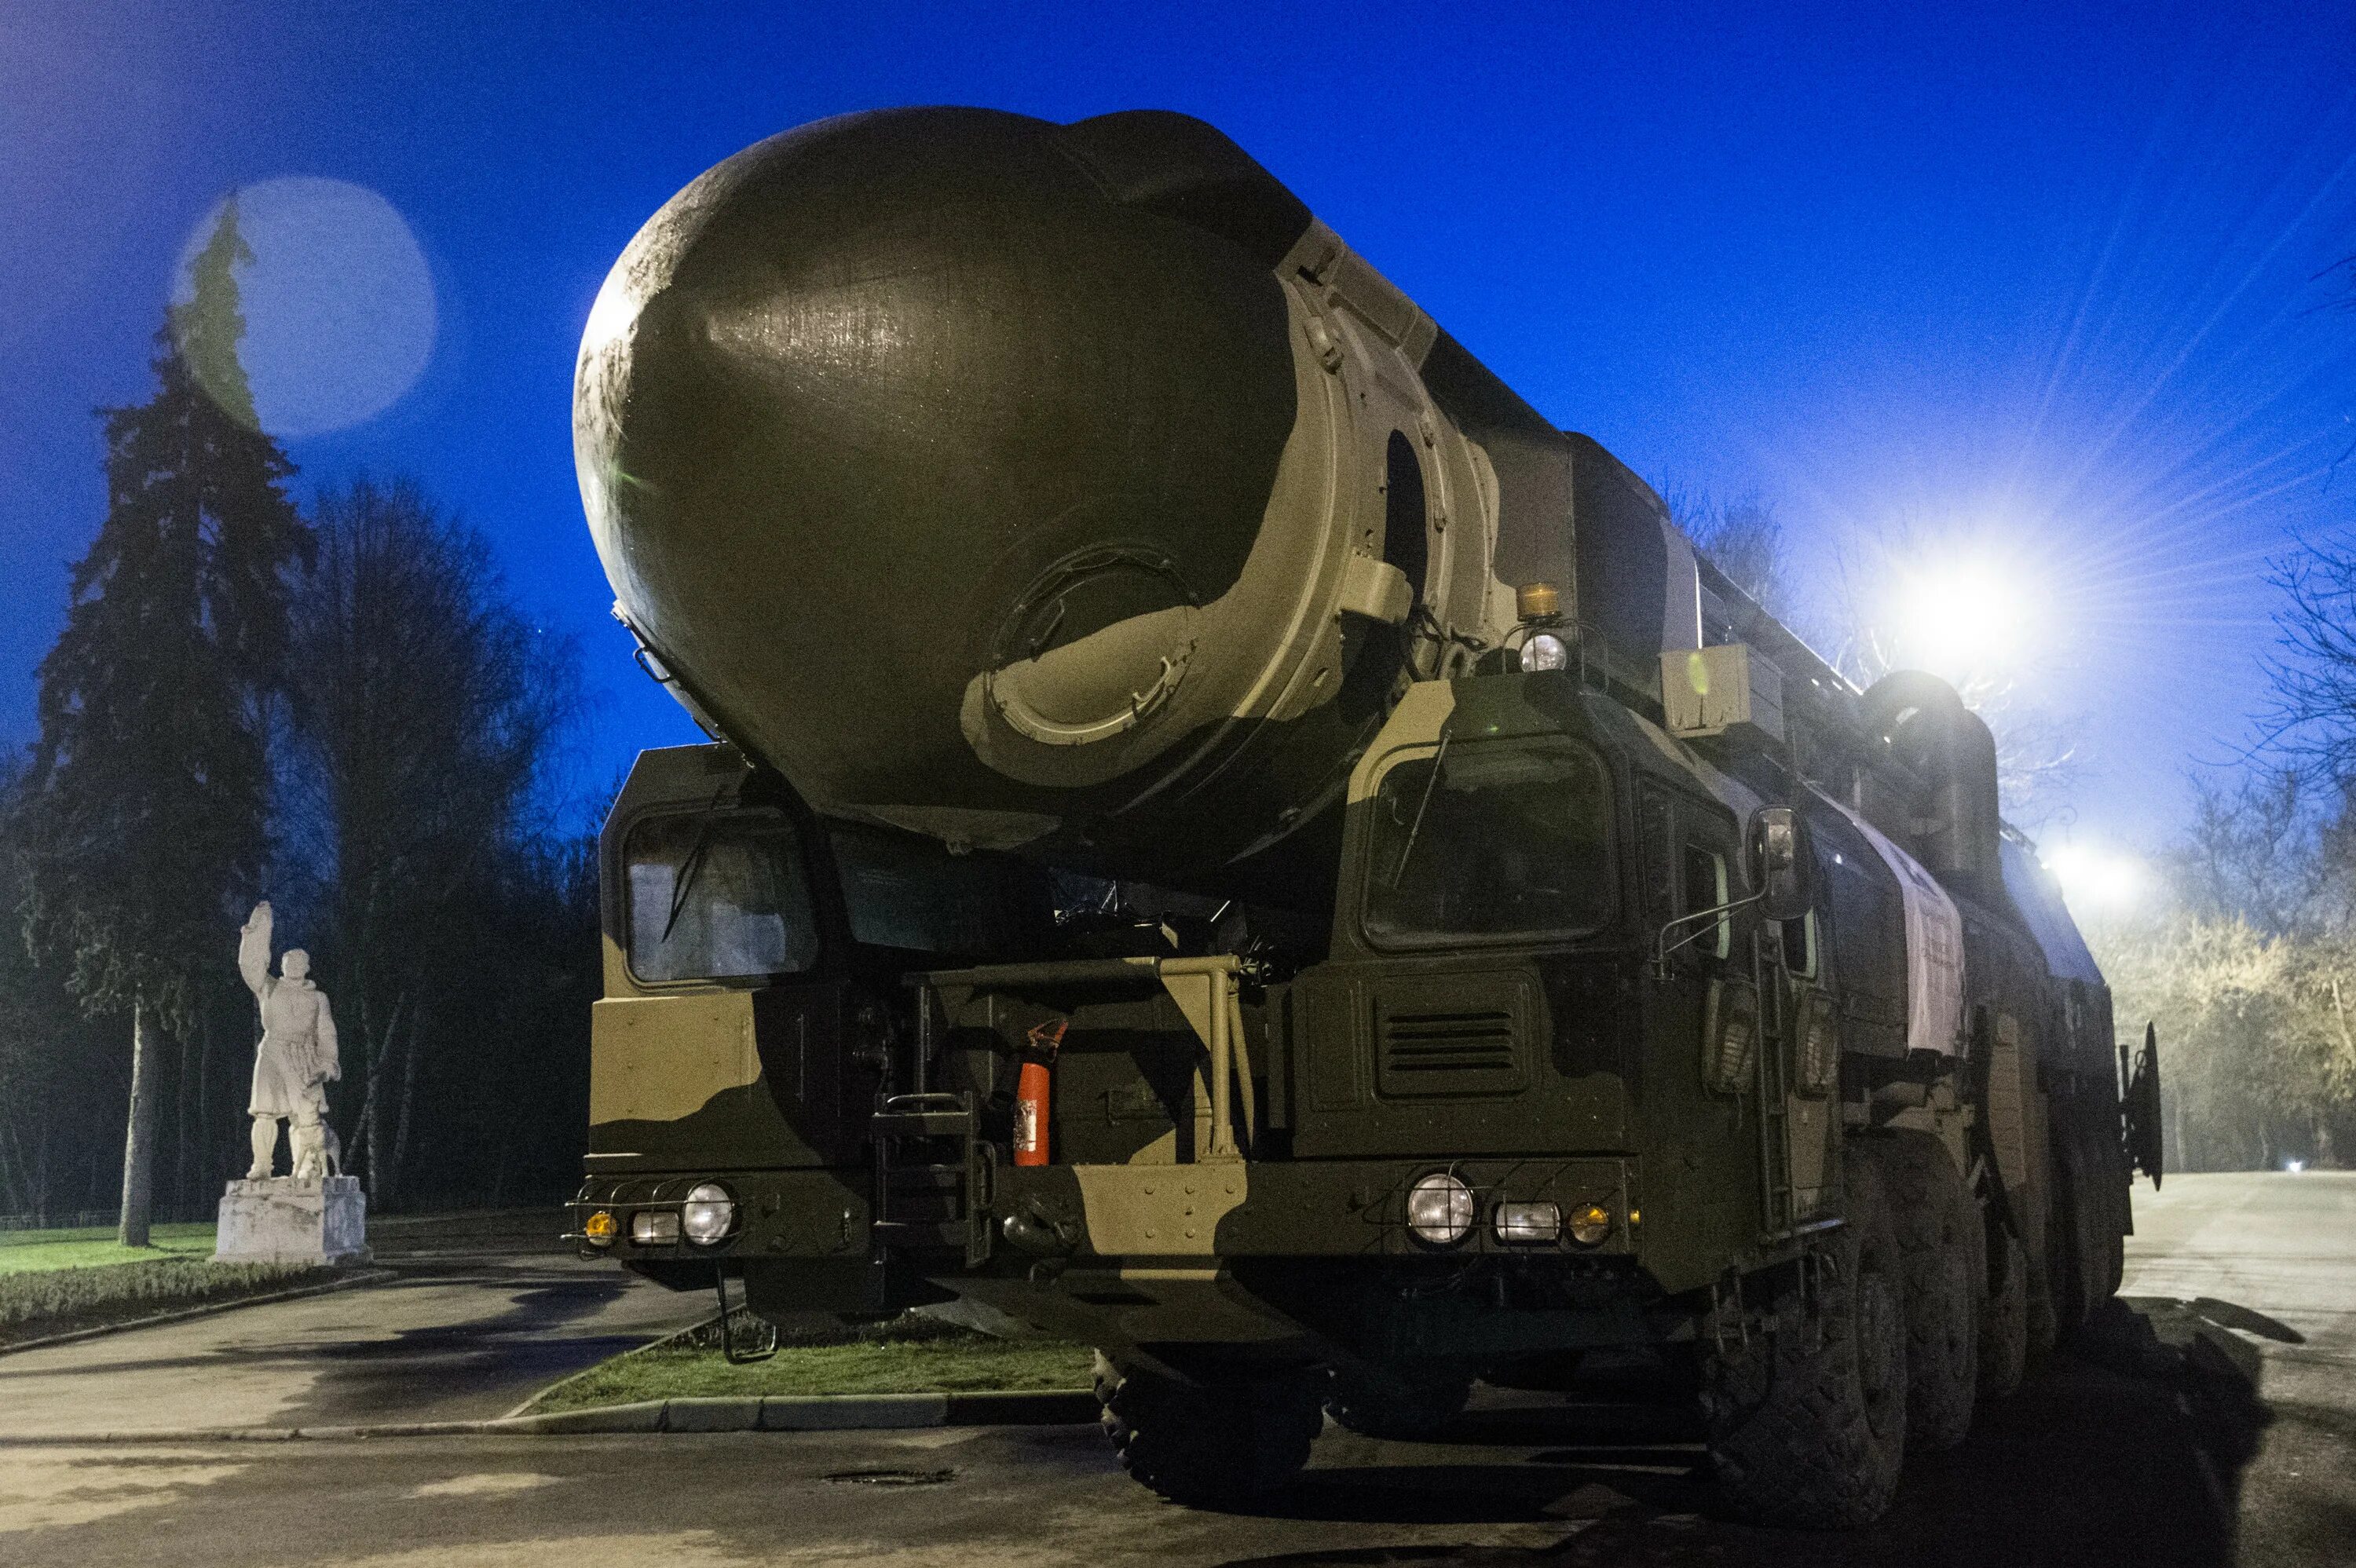 РТ-2пм «Тополь» (SS-25);. Межконтинентальная баллистическая ракета РТ-2пм «Тополь». Ярс баллистическая ракета. РТ-2пм2 «Тополь-м». Россия готова применить ядерное оружие